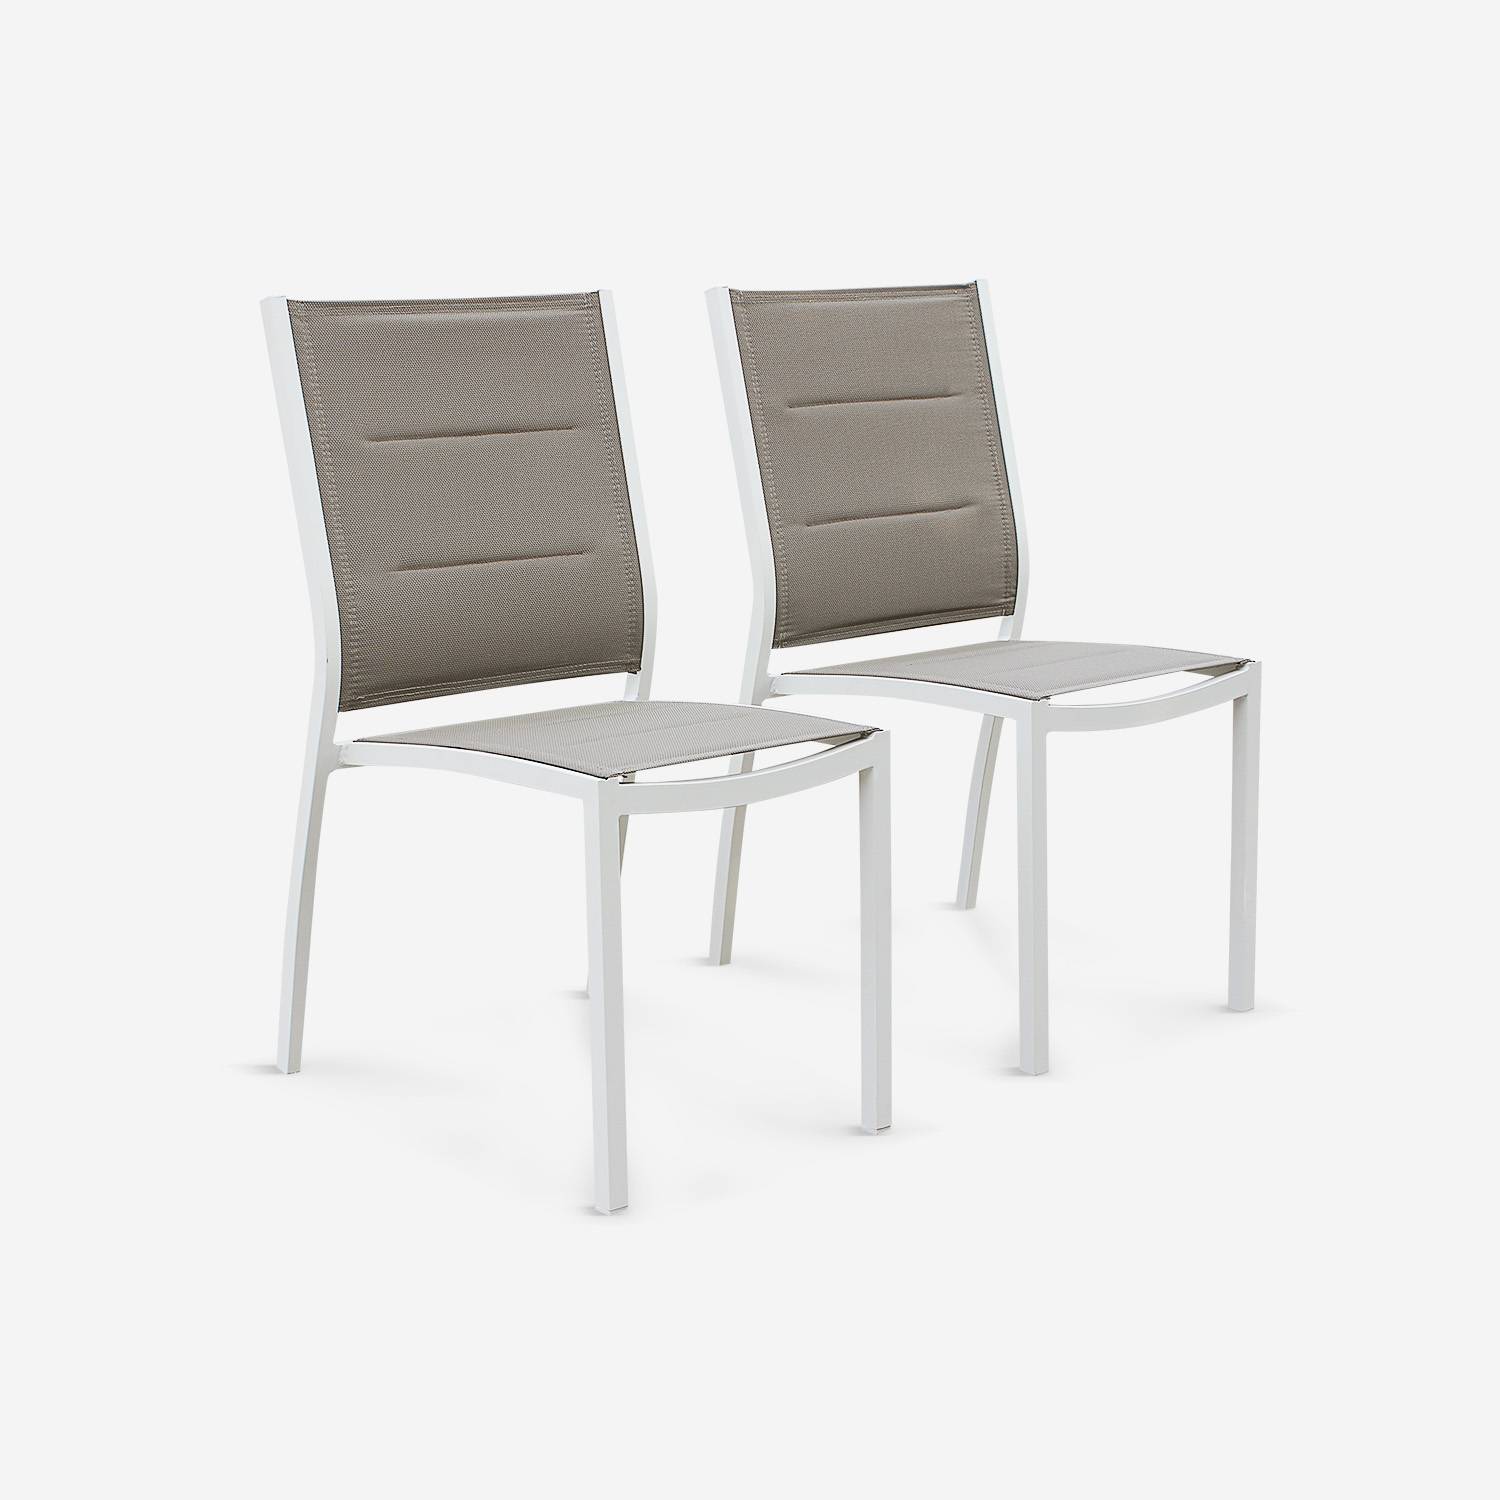 Coppia di sedie Chicago/Odenton in alluminio bianco e textilene colore marrone talpa| arredo esterni  | sweeek